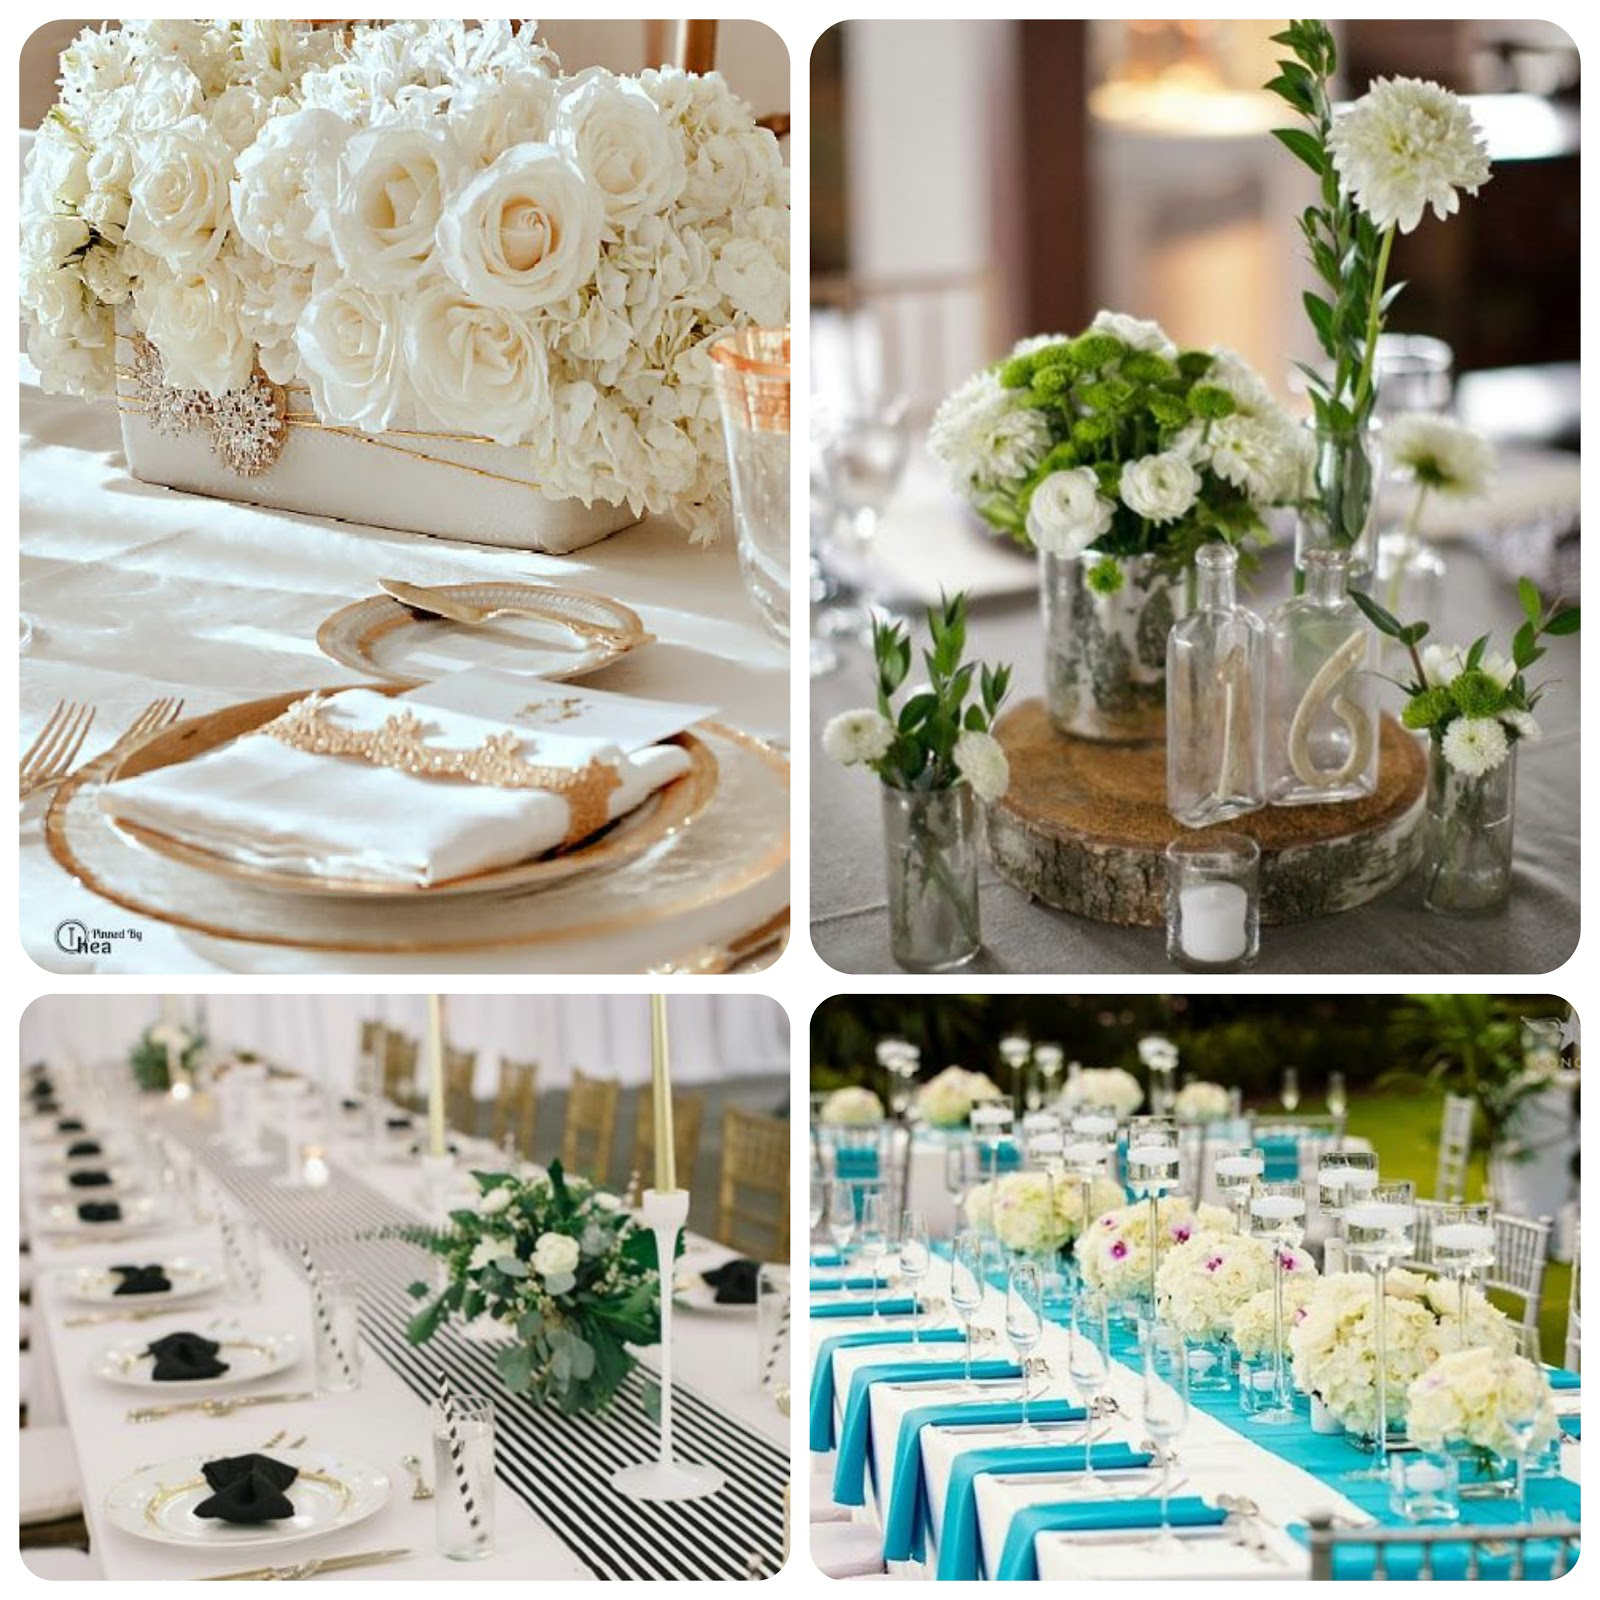 Scnographie-mariage-couleurs-blanc-event-designer-dcoration-symbolique-chic-champetre-nuance-ton-